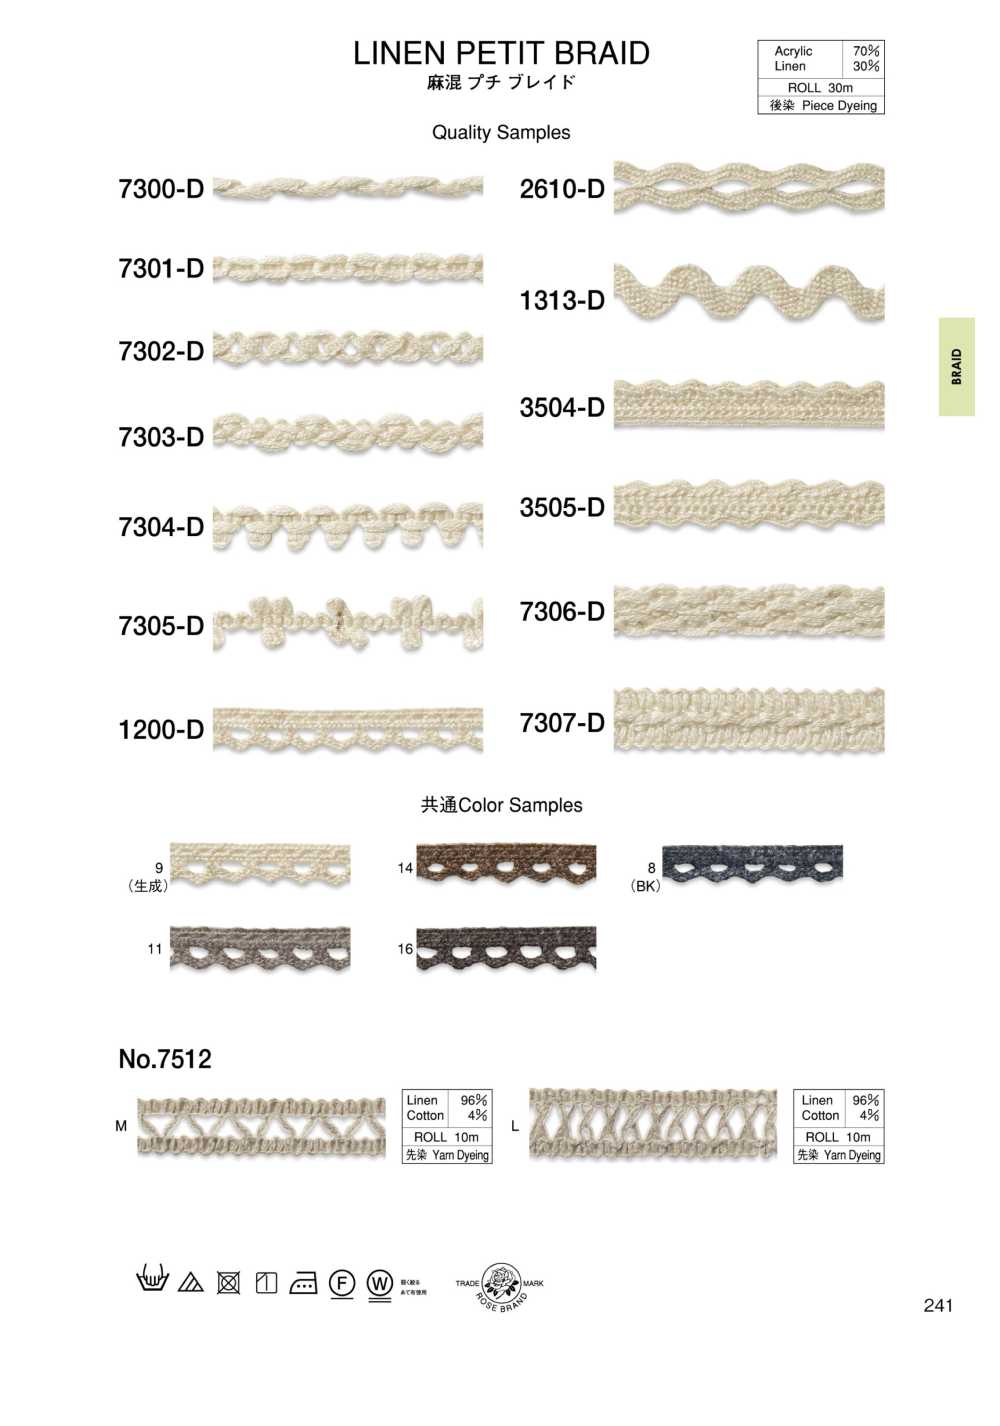 7304-D Linen Blend Petite Braid[Ribbon Tape Cord] ROSE BRAND (Marushin)